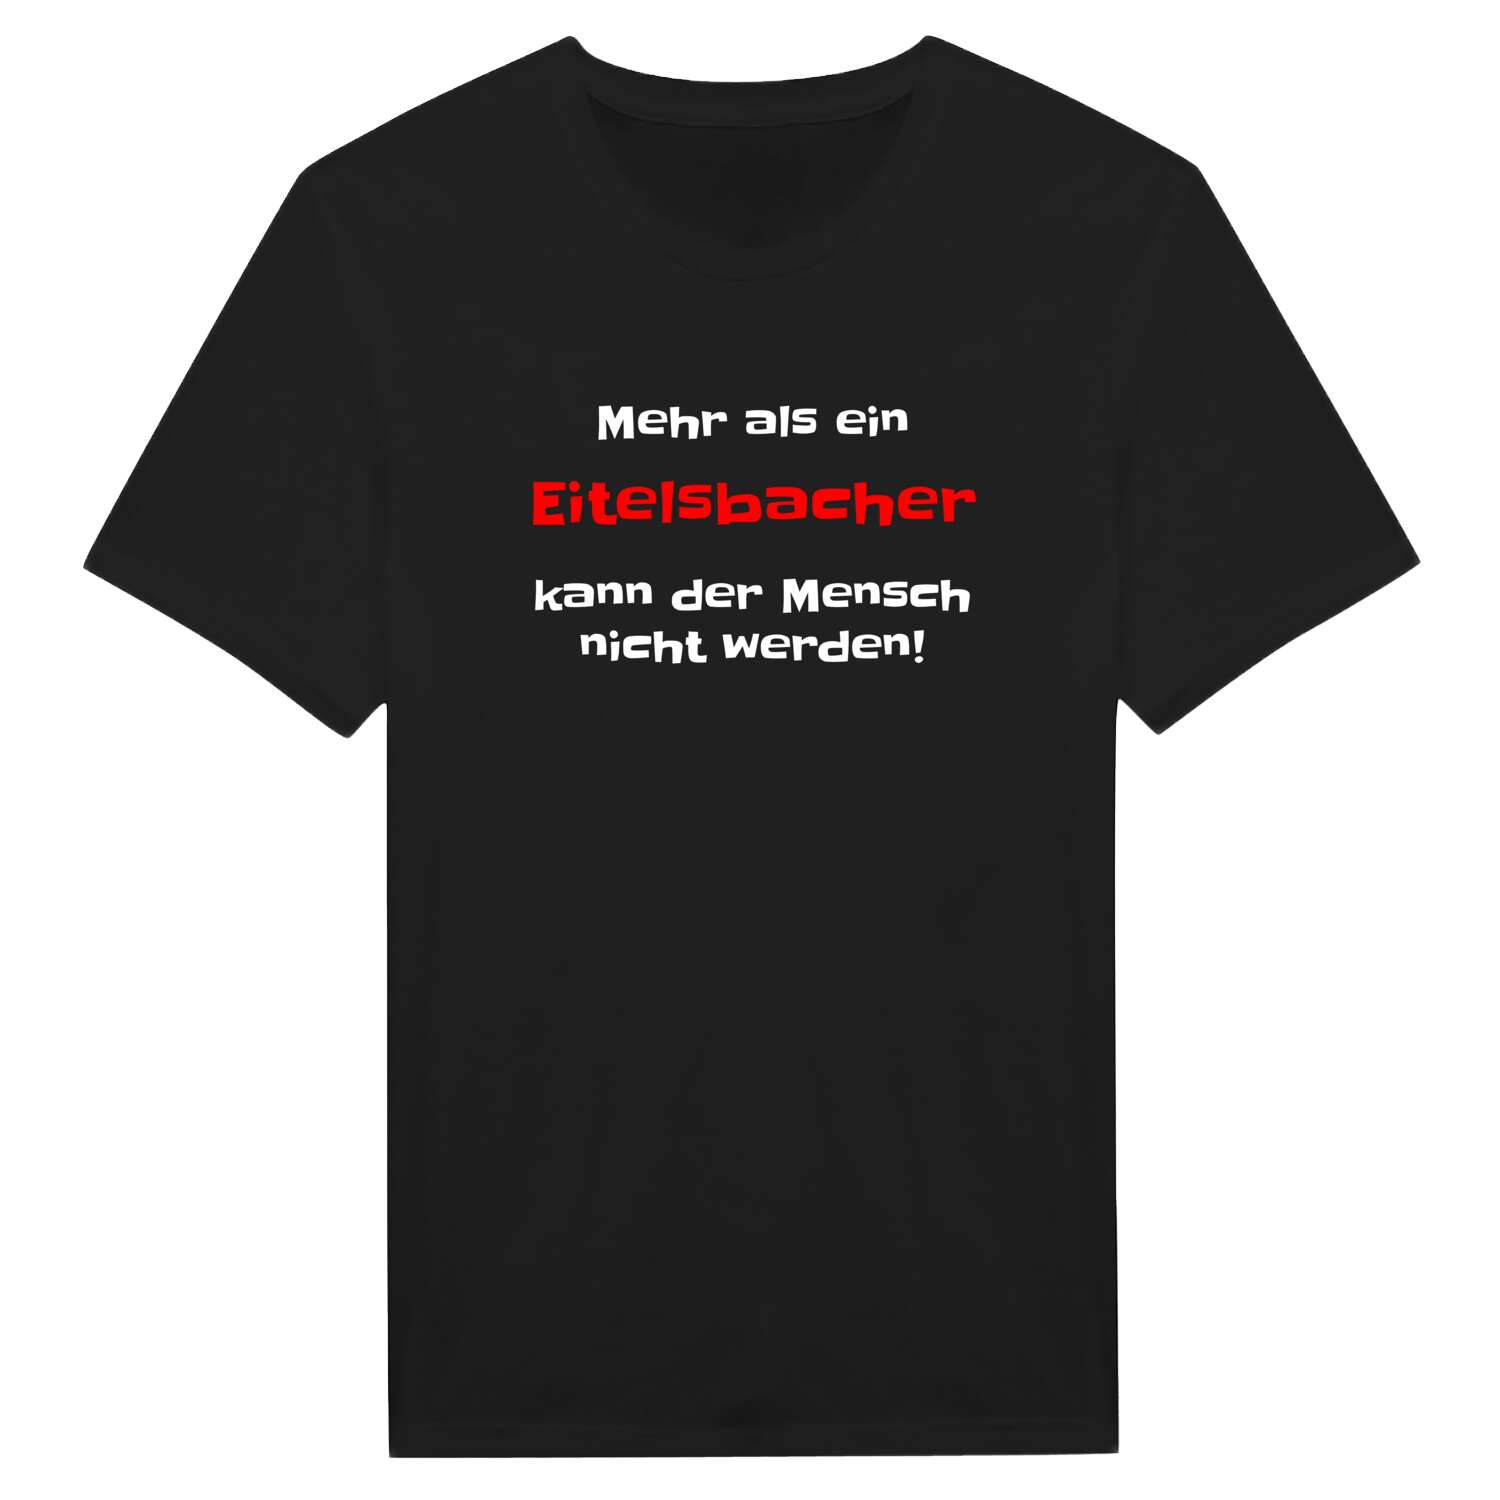 Eitelsbach T-Shirt »Mehr als ein«